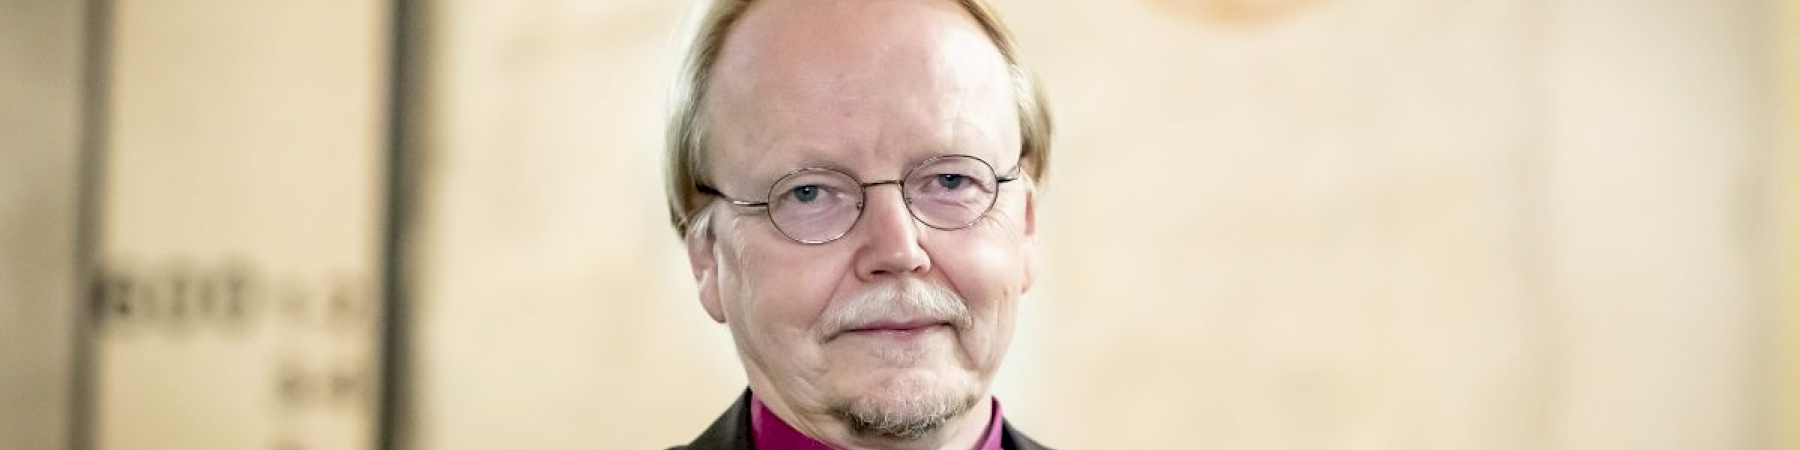 Kari Mäkinen: ”Suomessa on nyt elämänkokemusta enemmän kuin koskaan aikaisemmin”